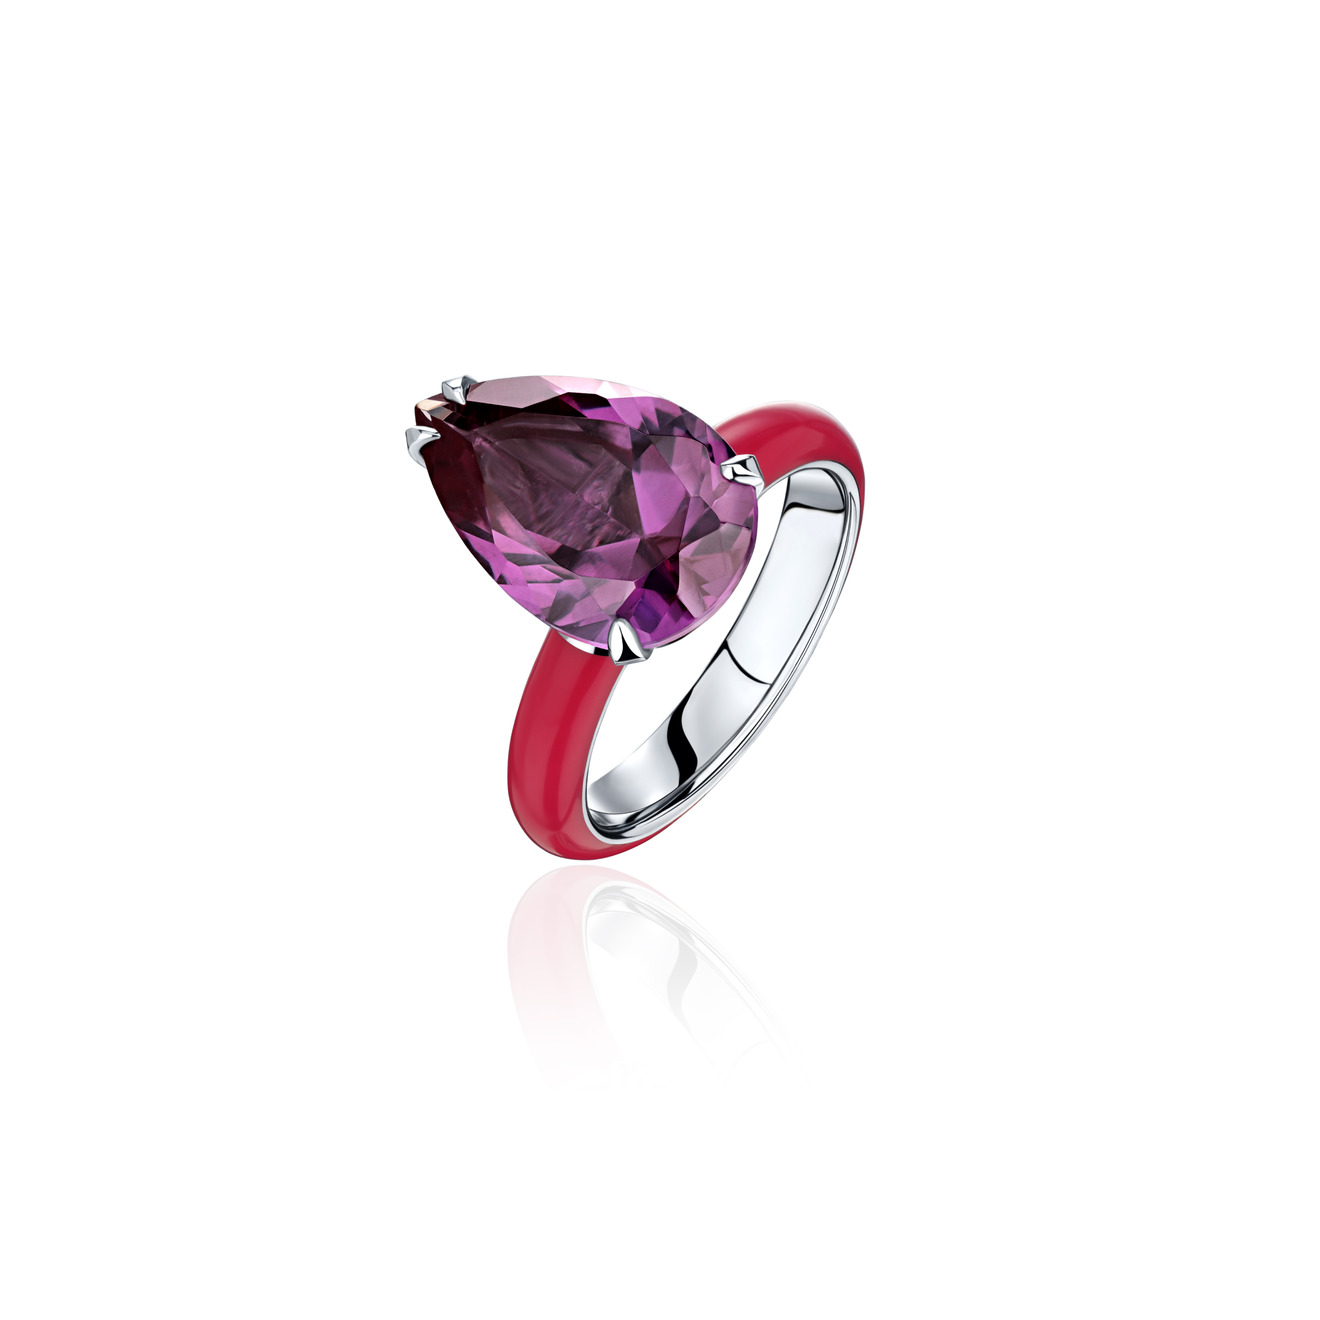 AlexeyZubov Кольцо с александритом с красной высокотехнологичной керамикой alexeyzubov кольцо bon bon из титана с выращенным кристаллом турмалина и с фиолетовой керамикой